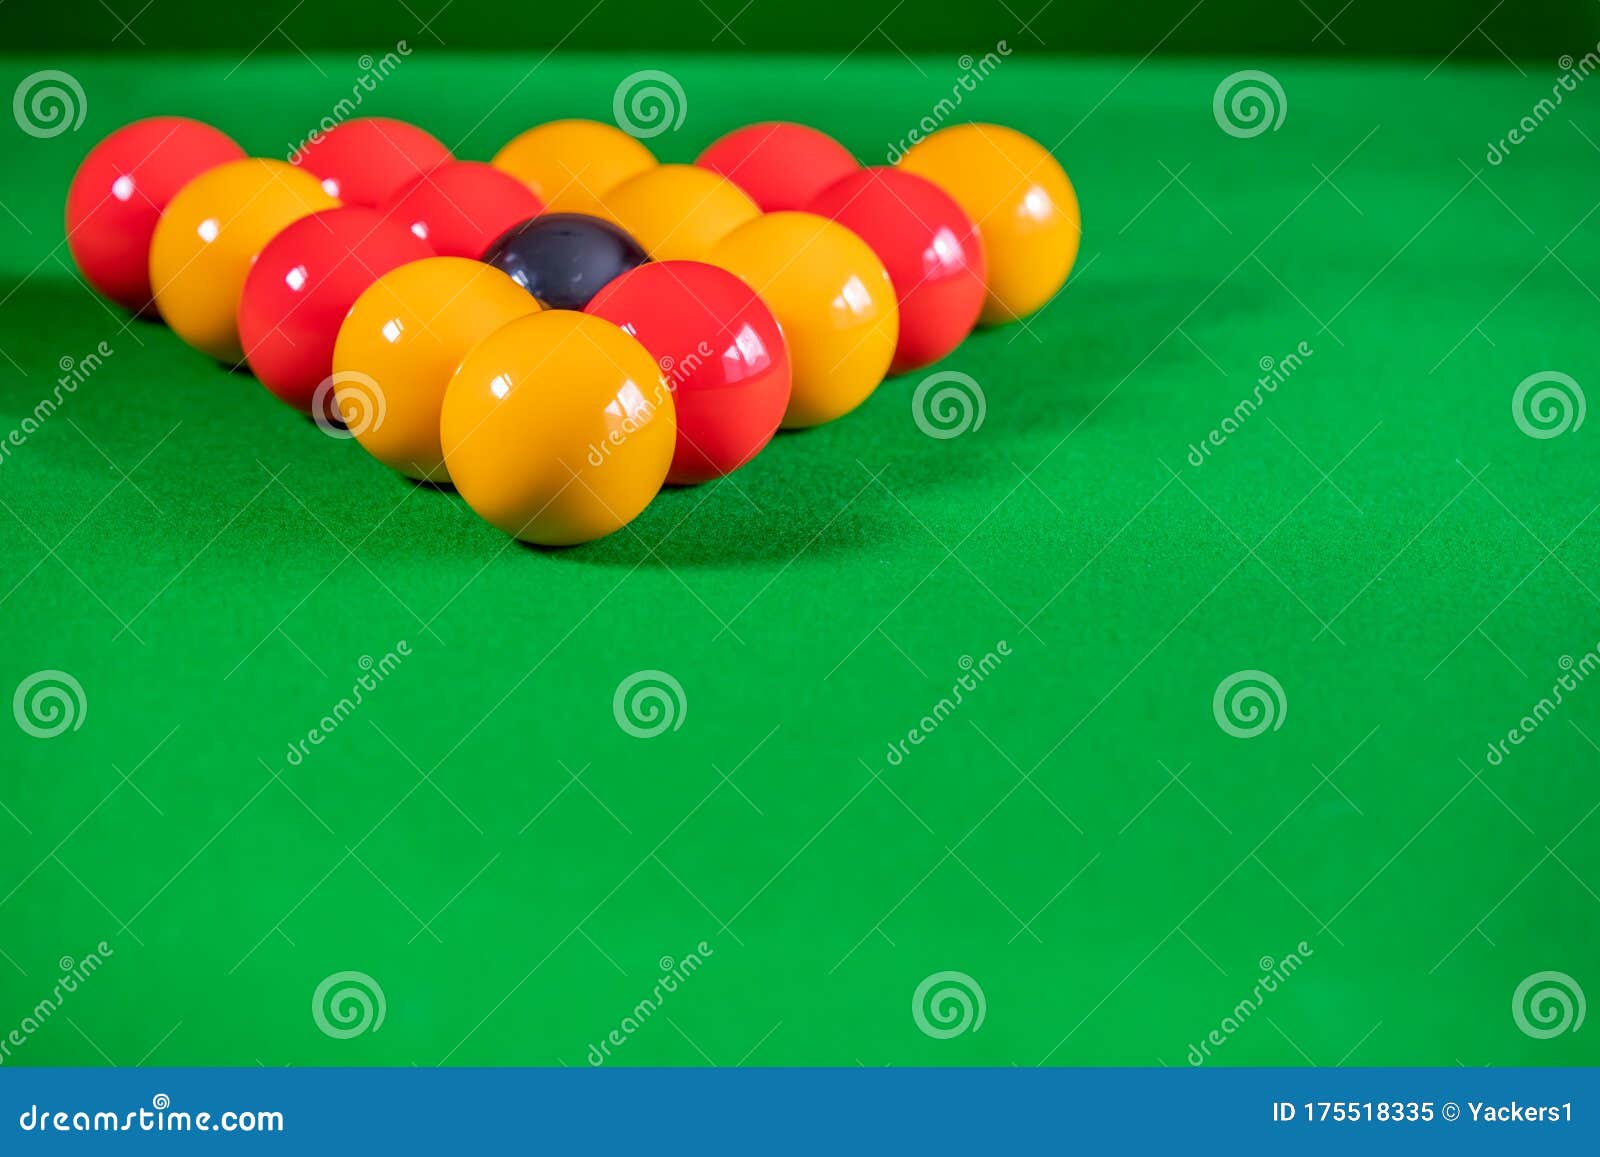 8 одноцветных шаров и 8 полосатых. Полосатые шары в бильярде. Снукер желтый шар. На бильярдном столе лежат 8 одноцветных и 8 полосатых шаров 2 уровень. На бильярдном столе лежат 8 одноцветных и 8 полосатых шаров 3 уровень.